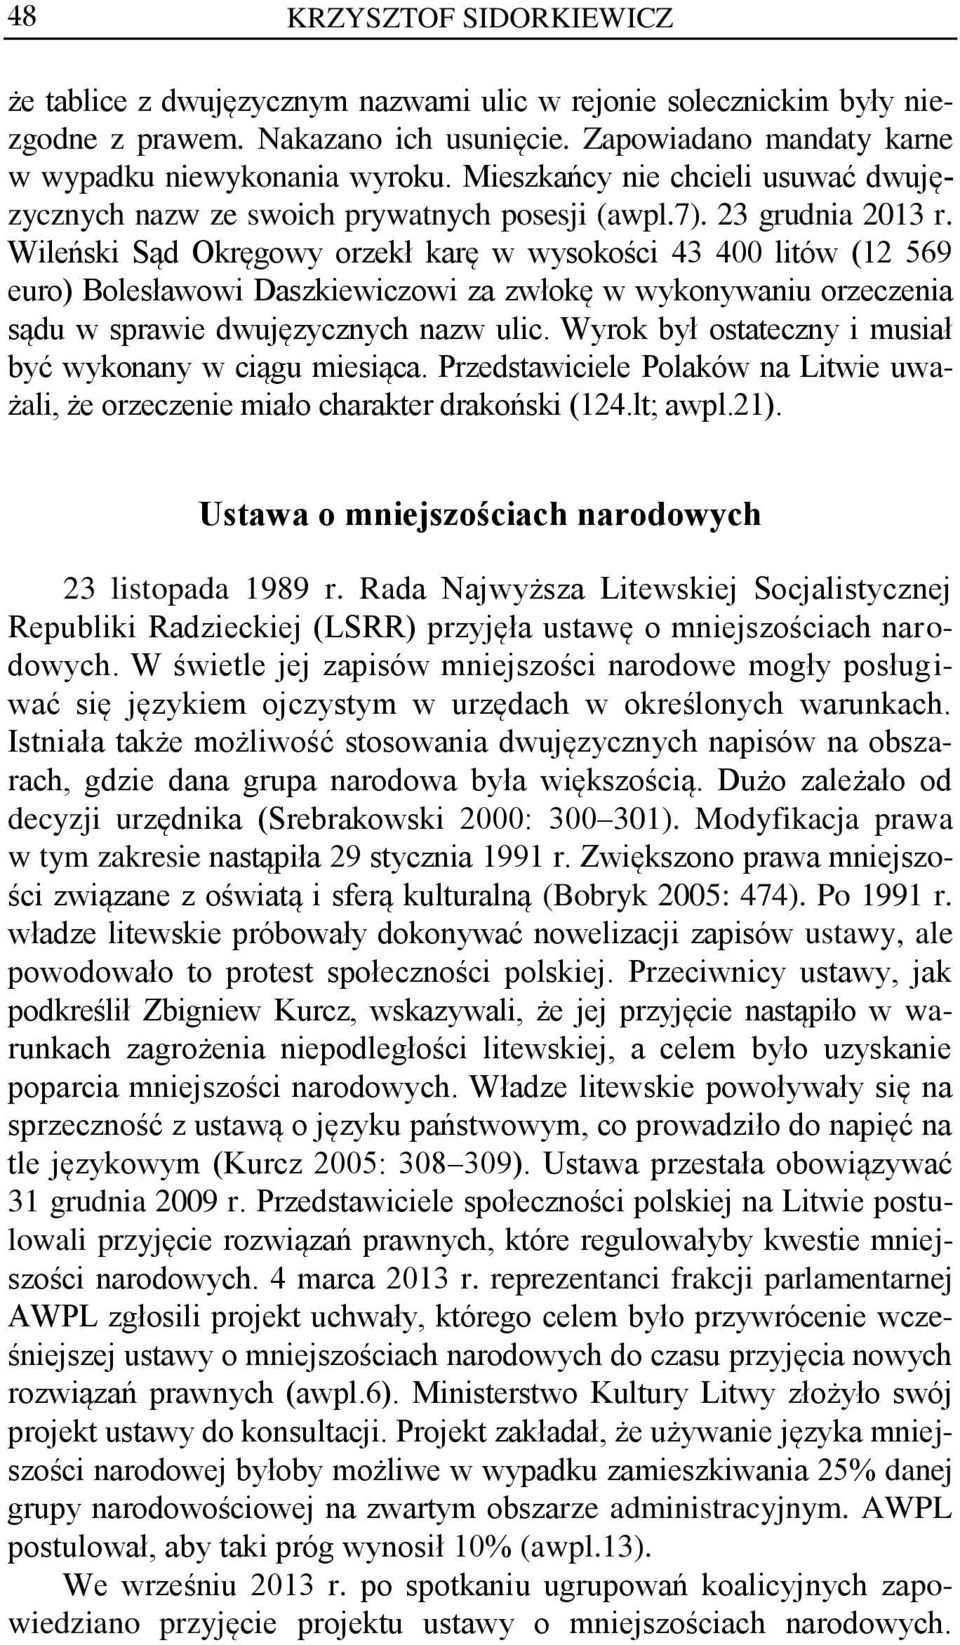 Wileński Sąd Okręgowy orzekł karę w wysokości 43 400 litów (12 569 euro) Bolesławowi Daszkiewiczowi za zwłokę w wykonywaniu orzeczenia sądu w sprawie dwujęzycznych nazw ulic.